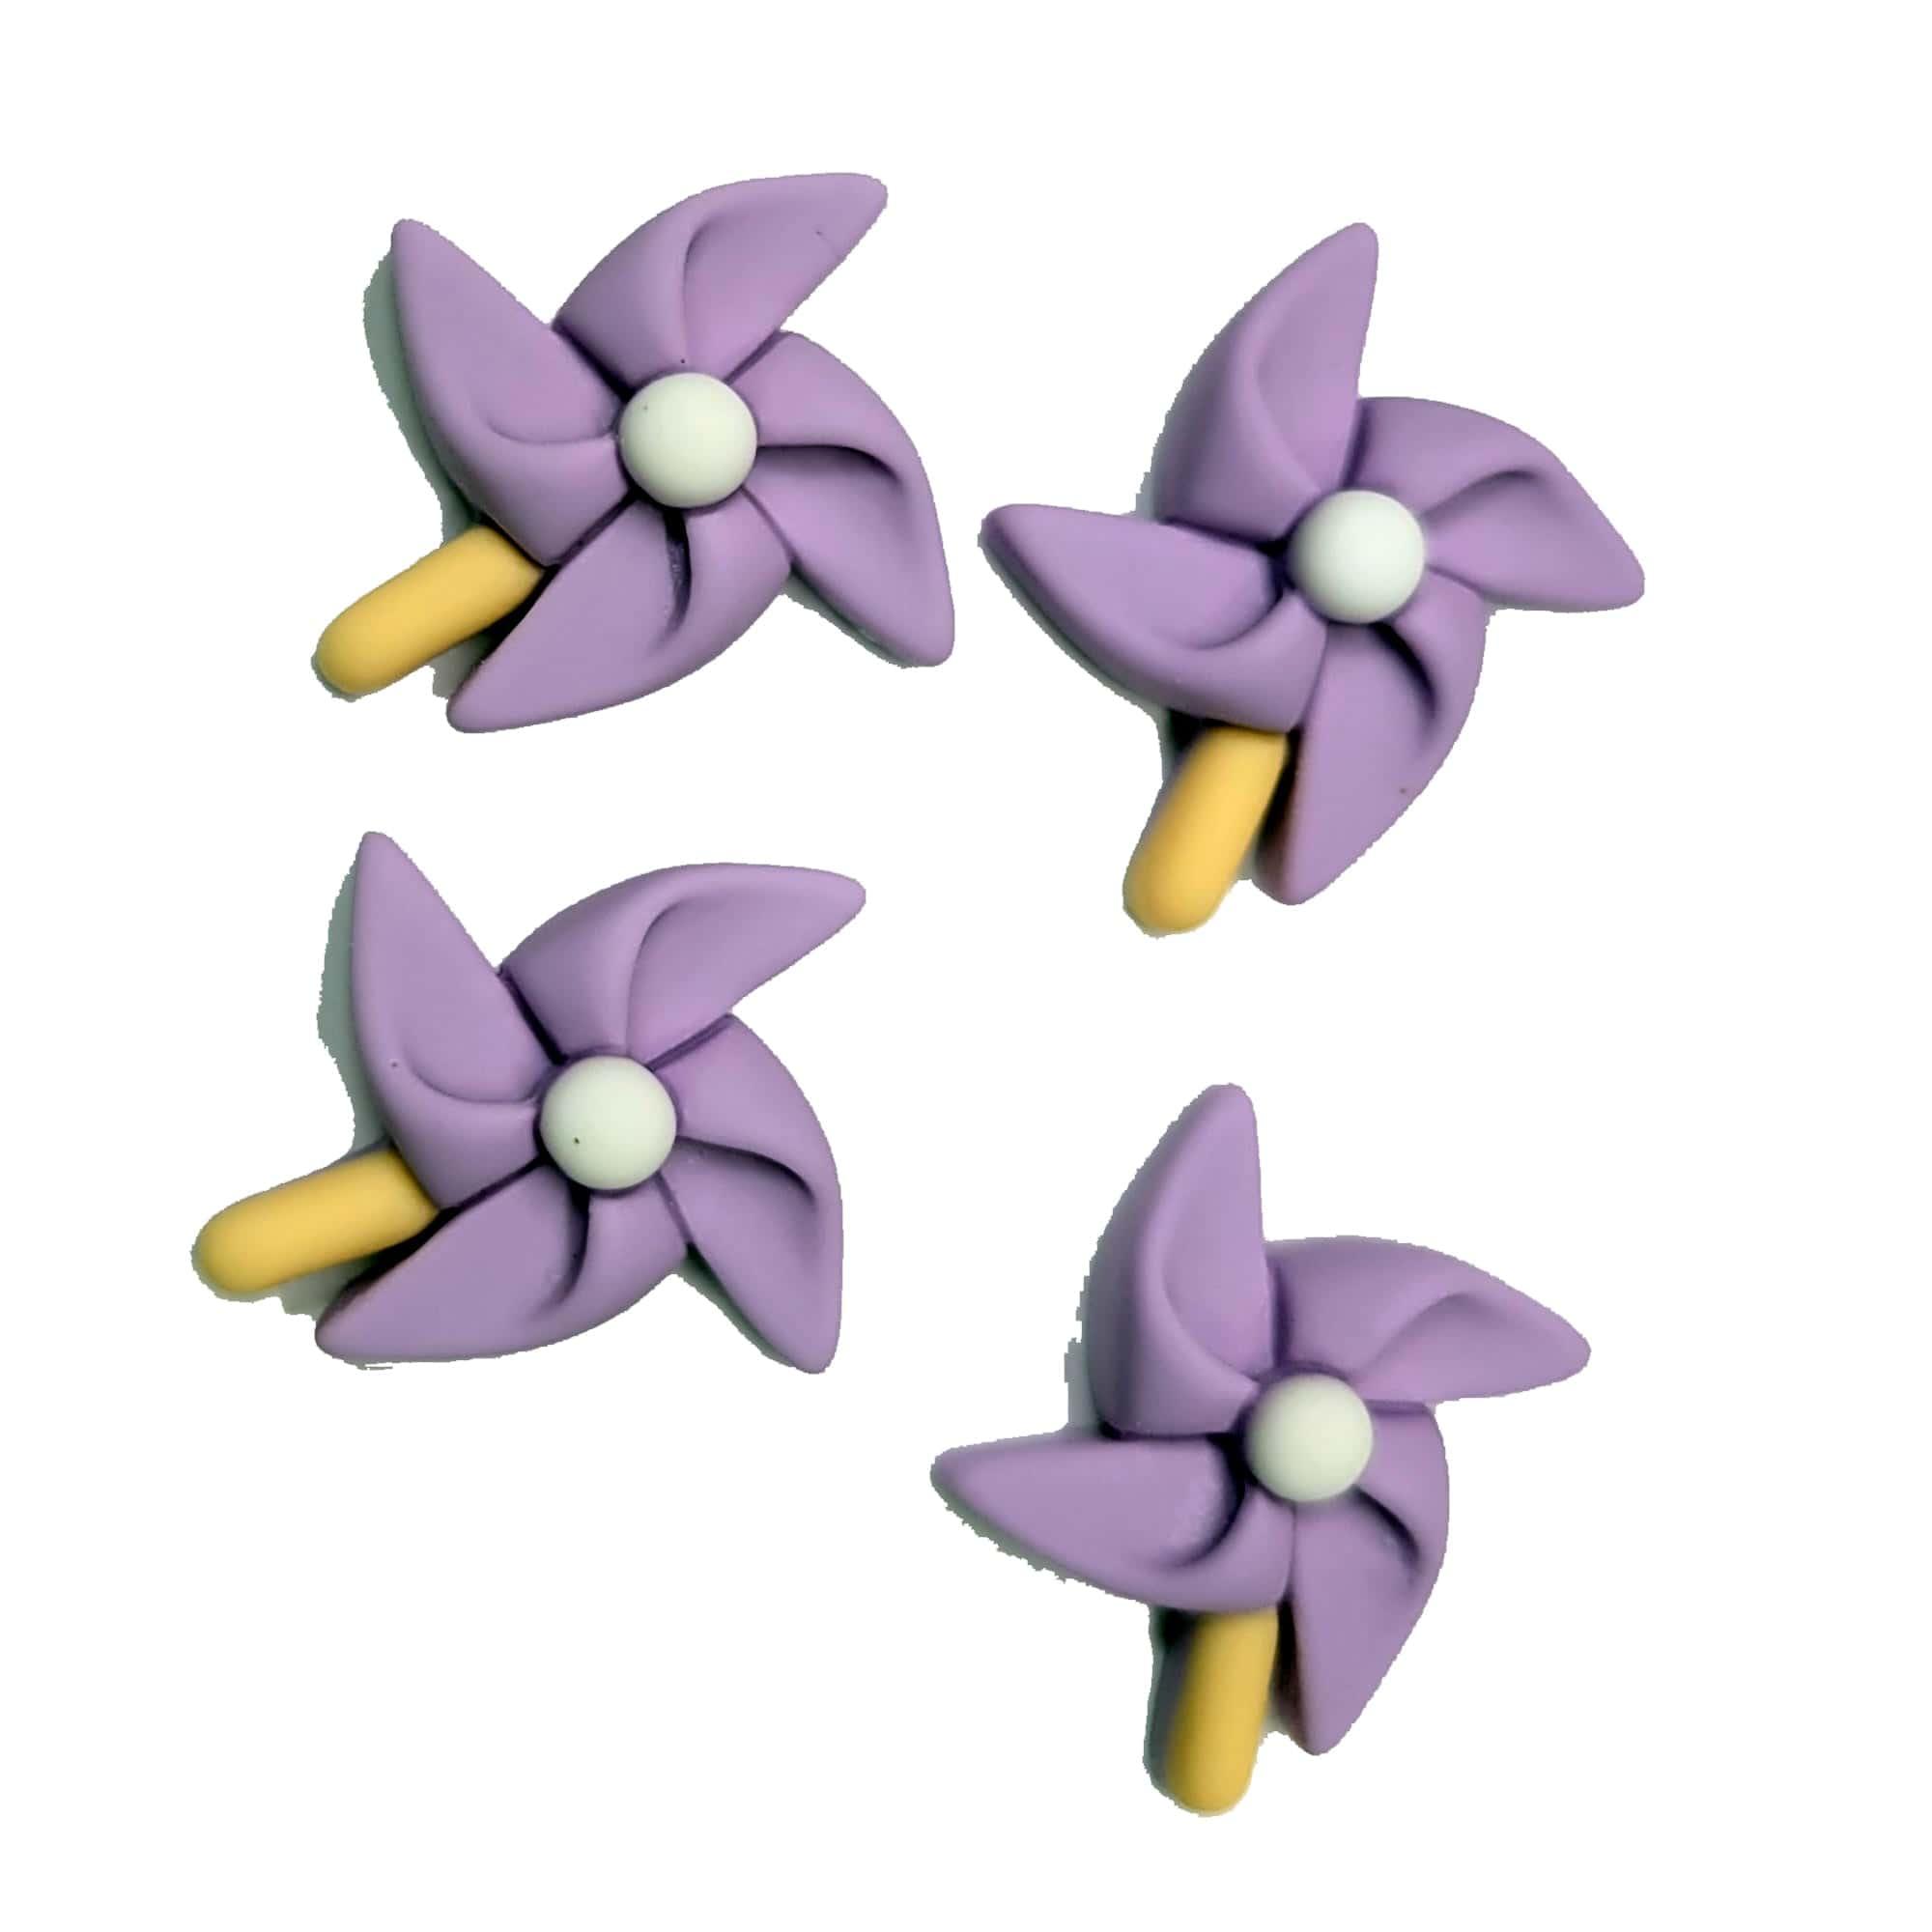 Summer Fun Collection Purple Pinwheels Flatback Scrapbook Buttons by SSC Designs - Pkg. of 4